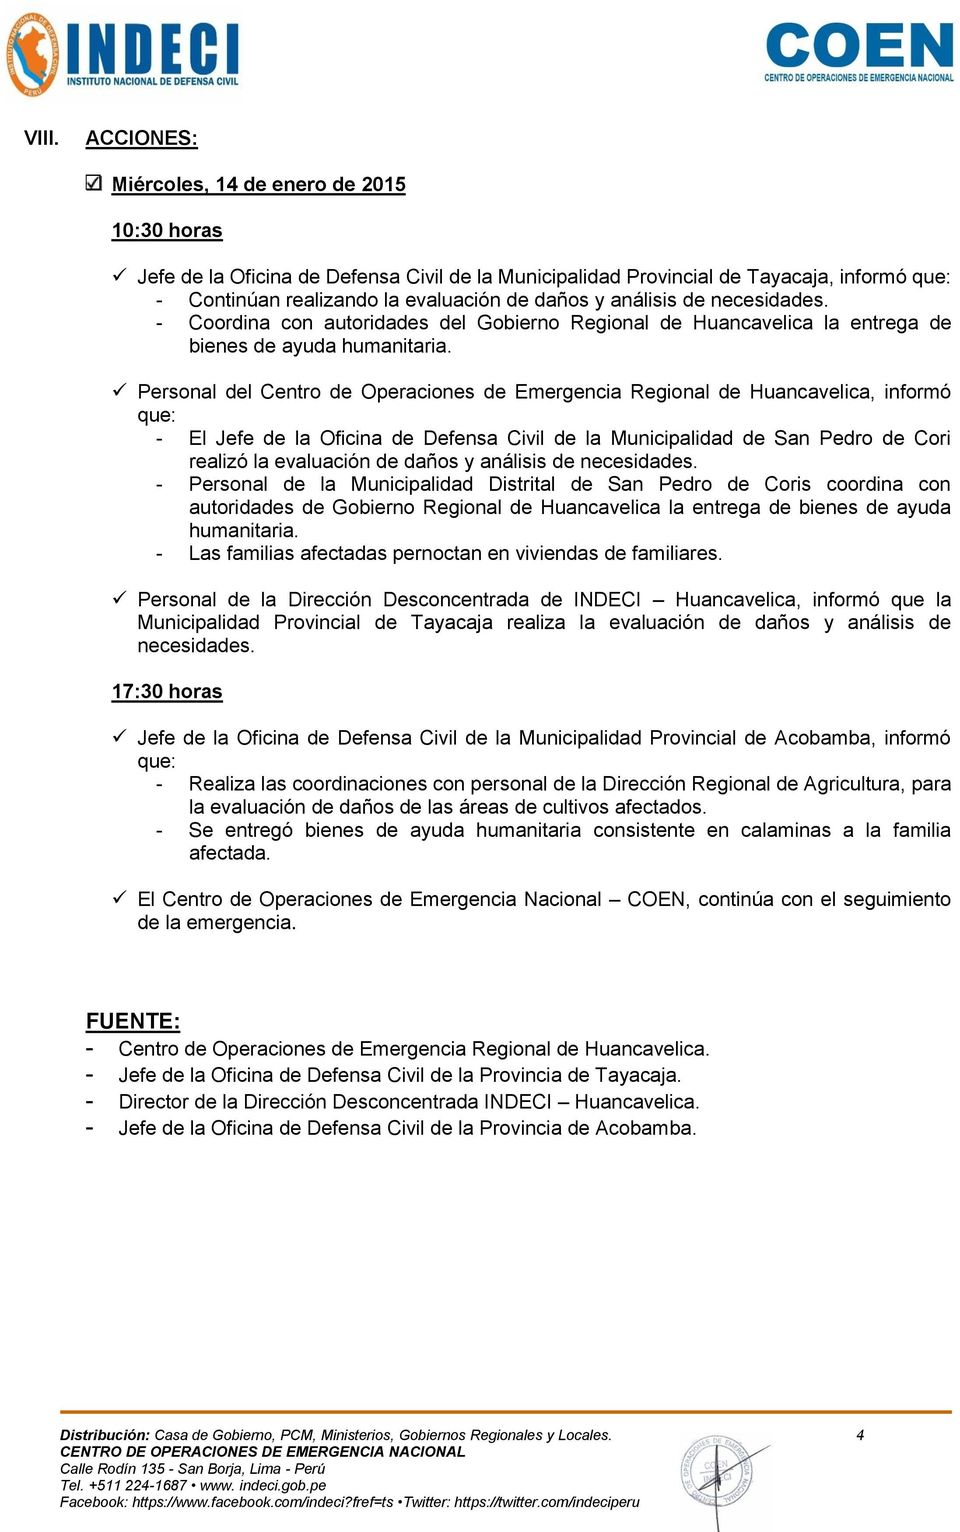 Personal del Centro de Operaciones de Emergencia Regional de Huancavelica, informó que: - El Jefe de la Oficina de Defensa Civil de la Municipalidad de San Pedro de Cori realizó la evaluación de